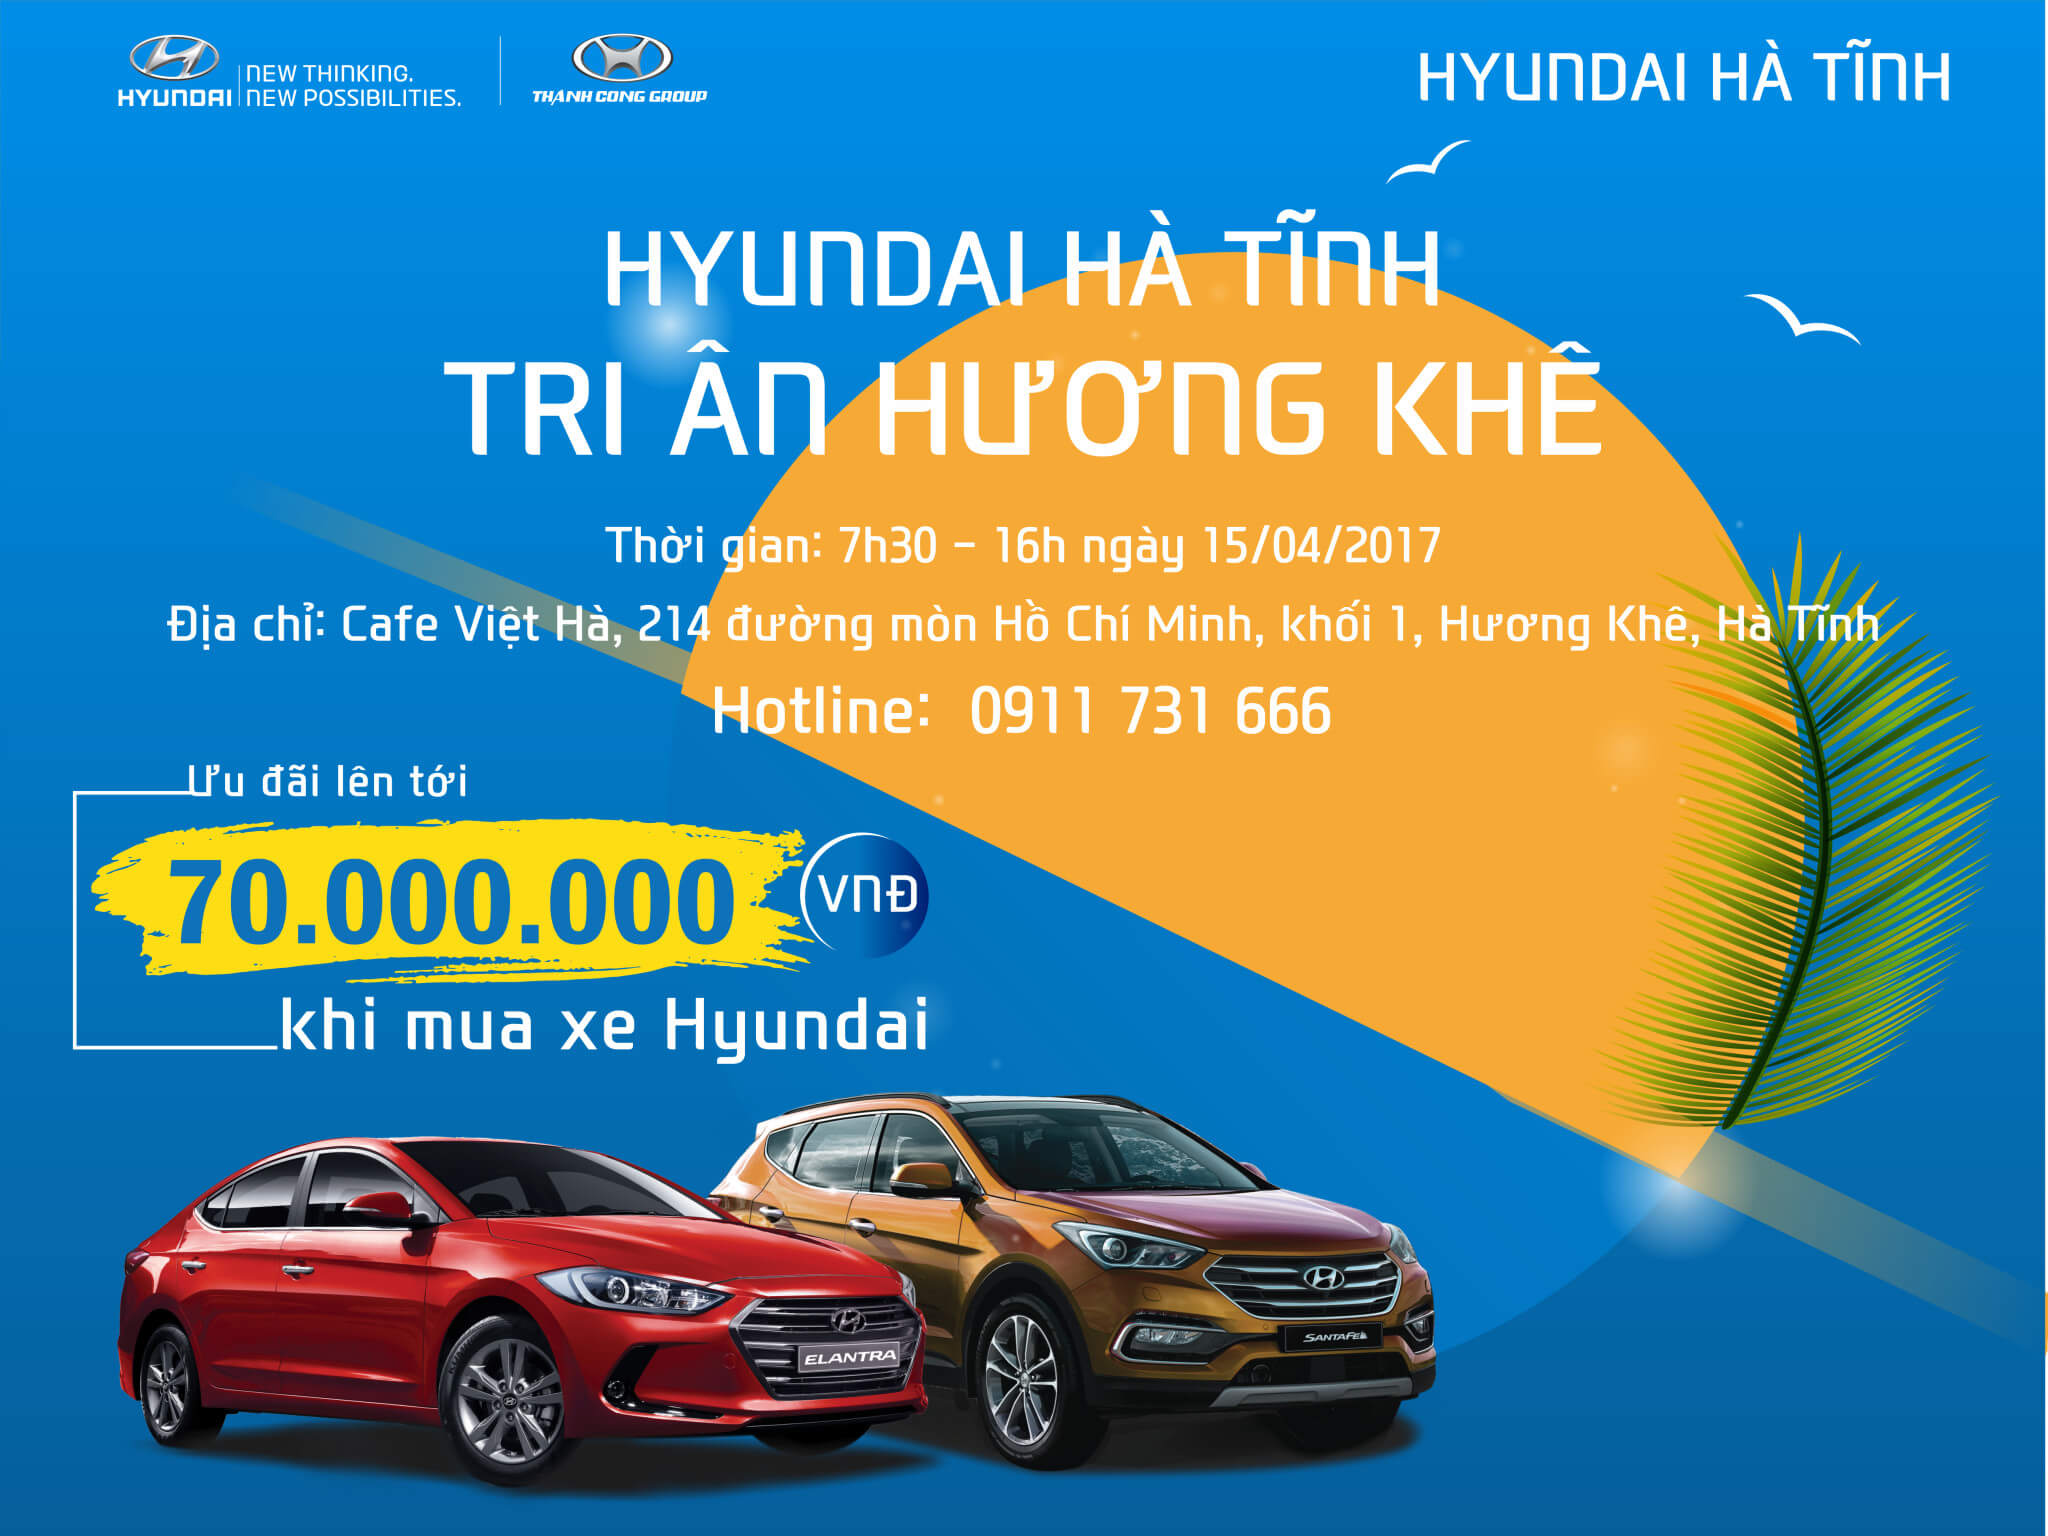 Hyundai Hà Tĩnh tổ chức chương trình lái thử và trải nghiệm xe Hyundai tại Hương Khê Hà Tĩnh